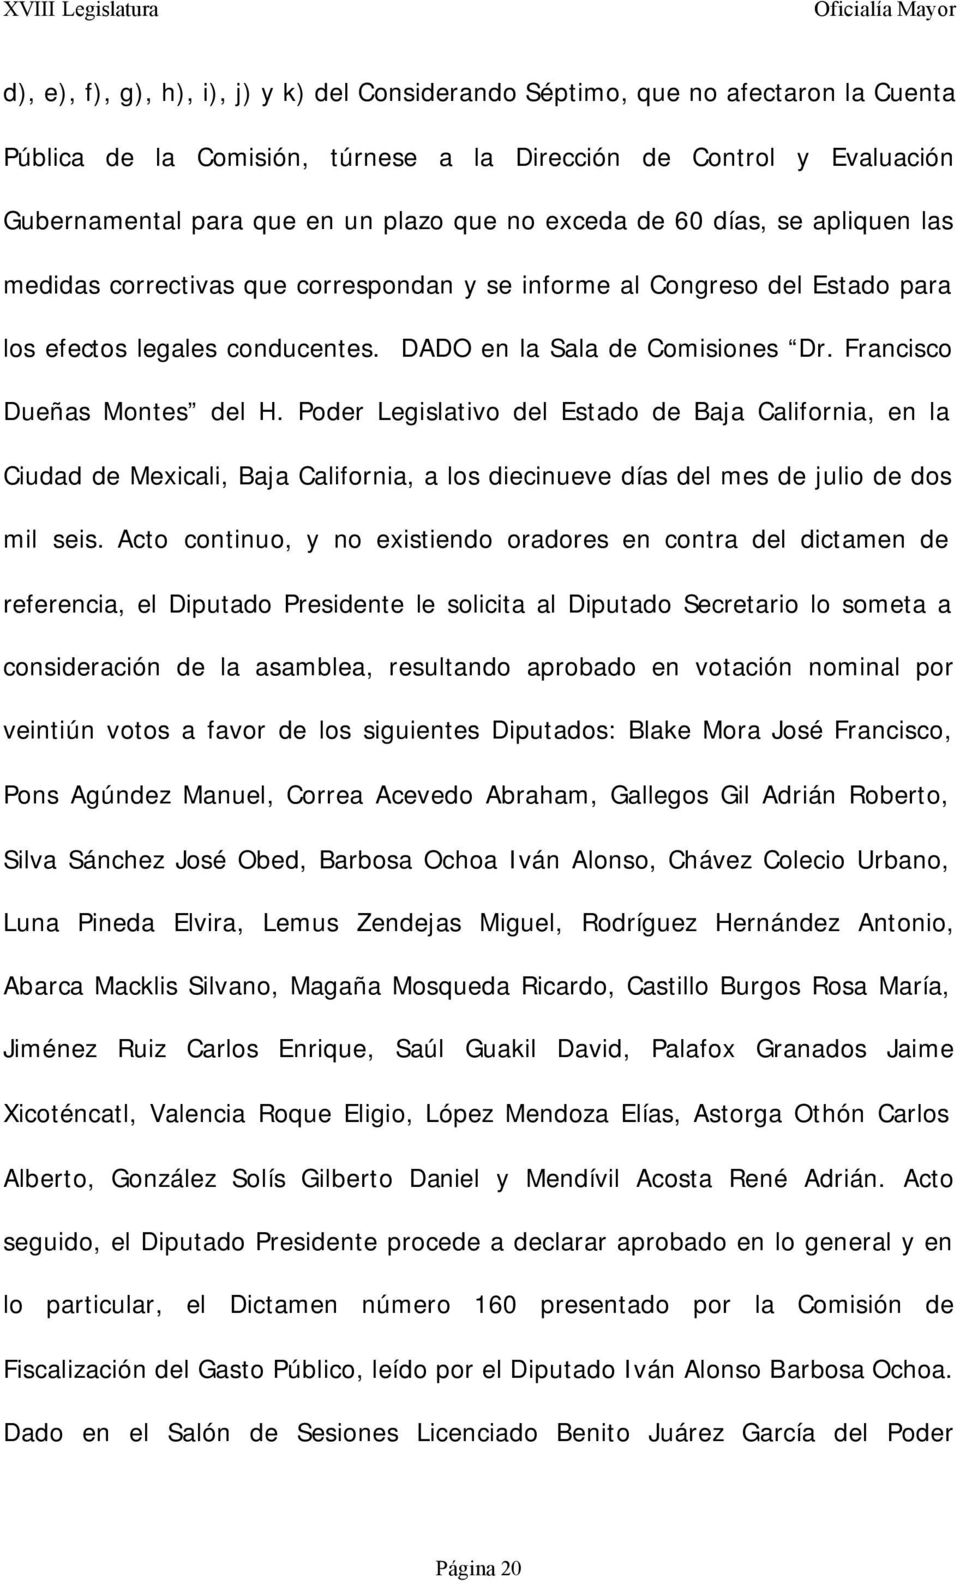 Francisco Dueñas Montes del H. Poder Legislativo del Estado de Baja California, en la Ciudad de Mexicali, Baja California, a los diecinueve días del mes de julio de dos mil seis.